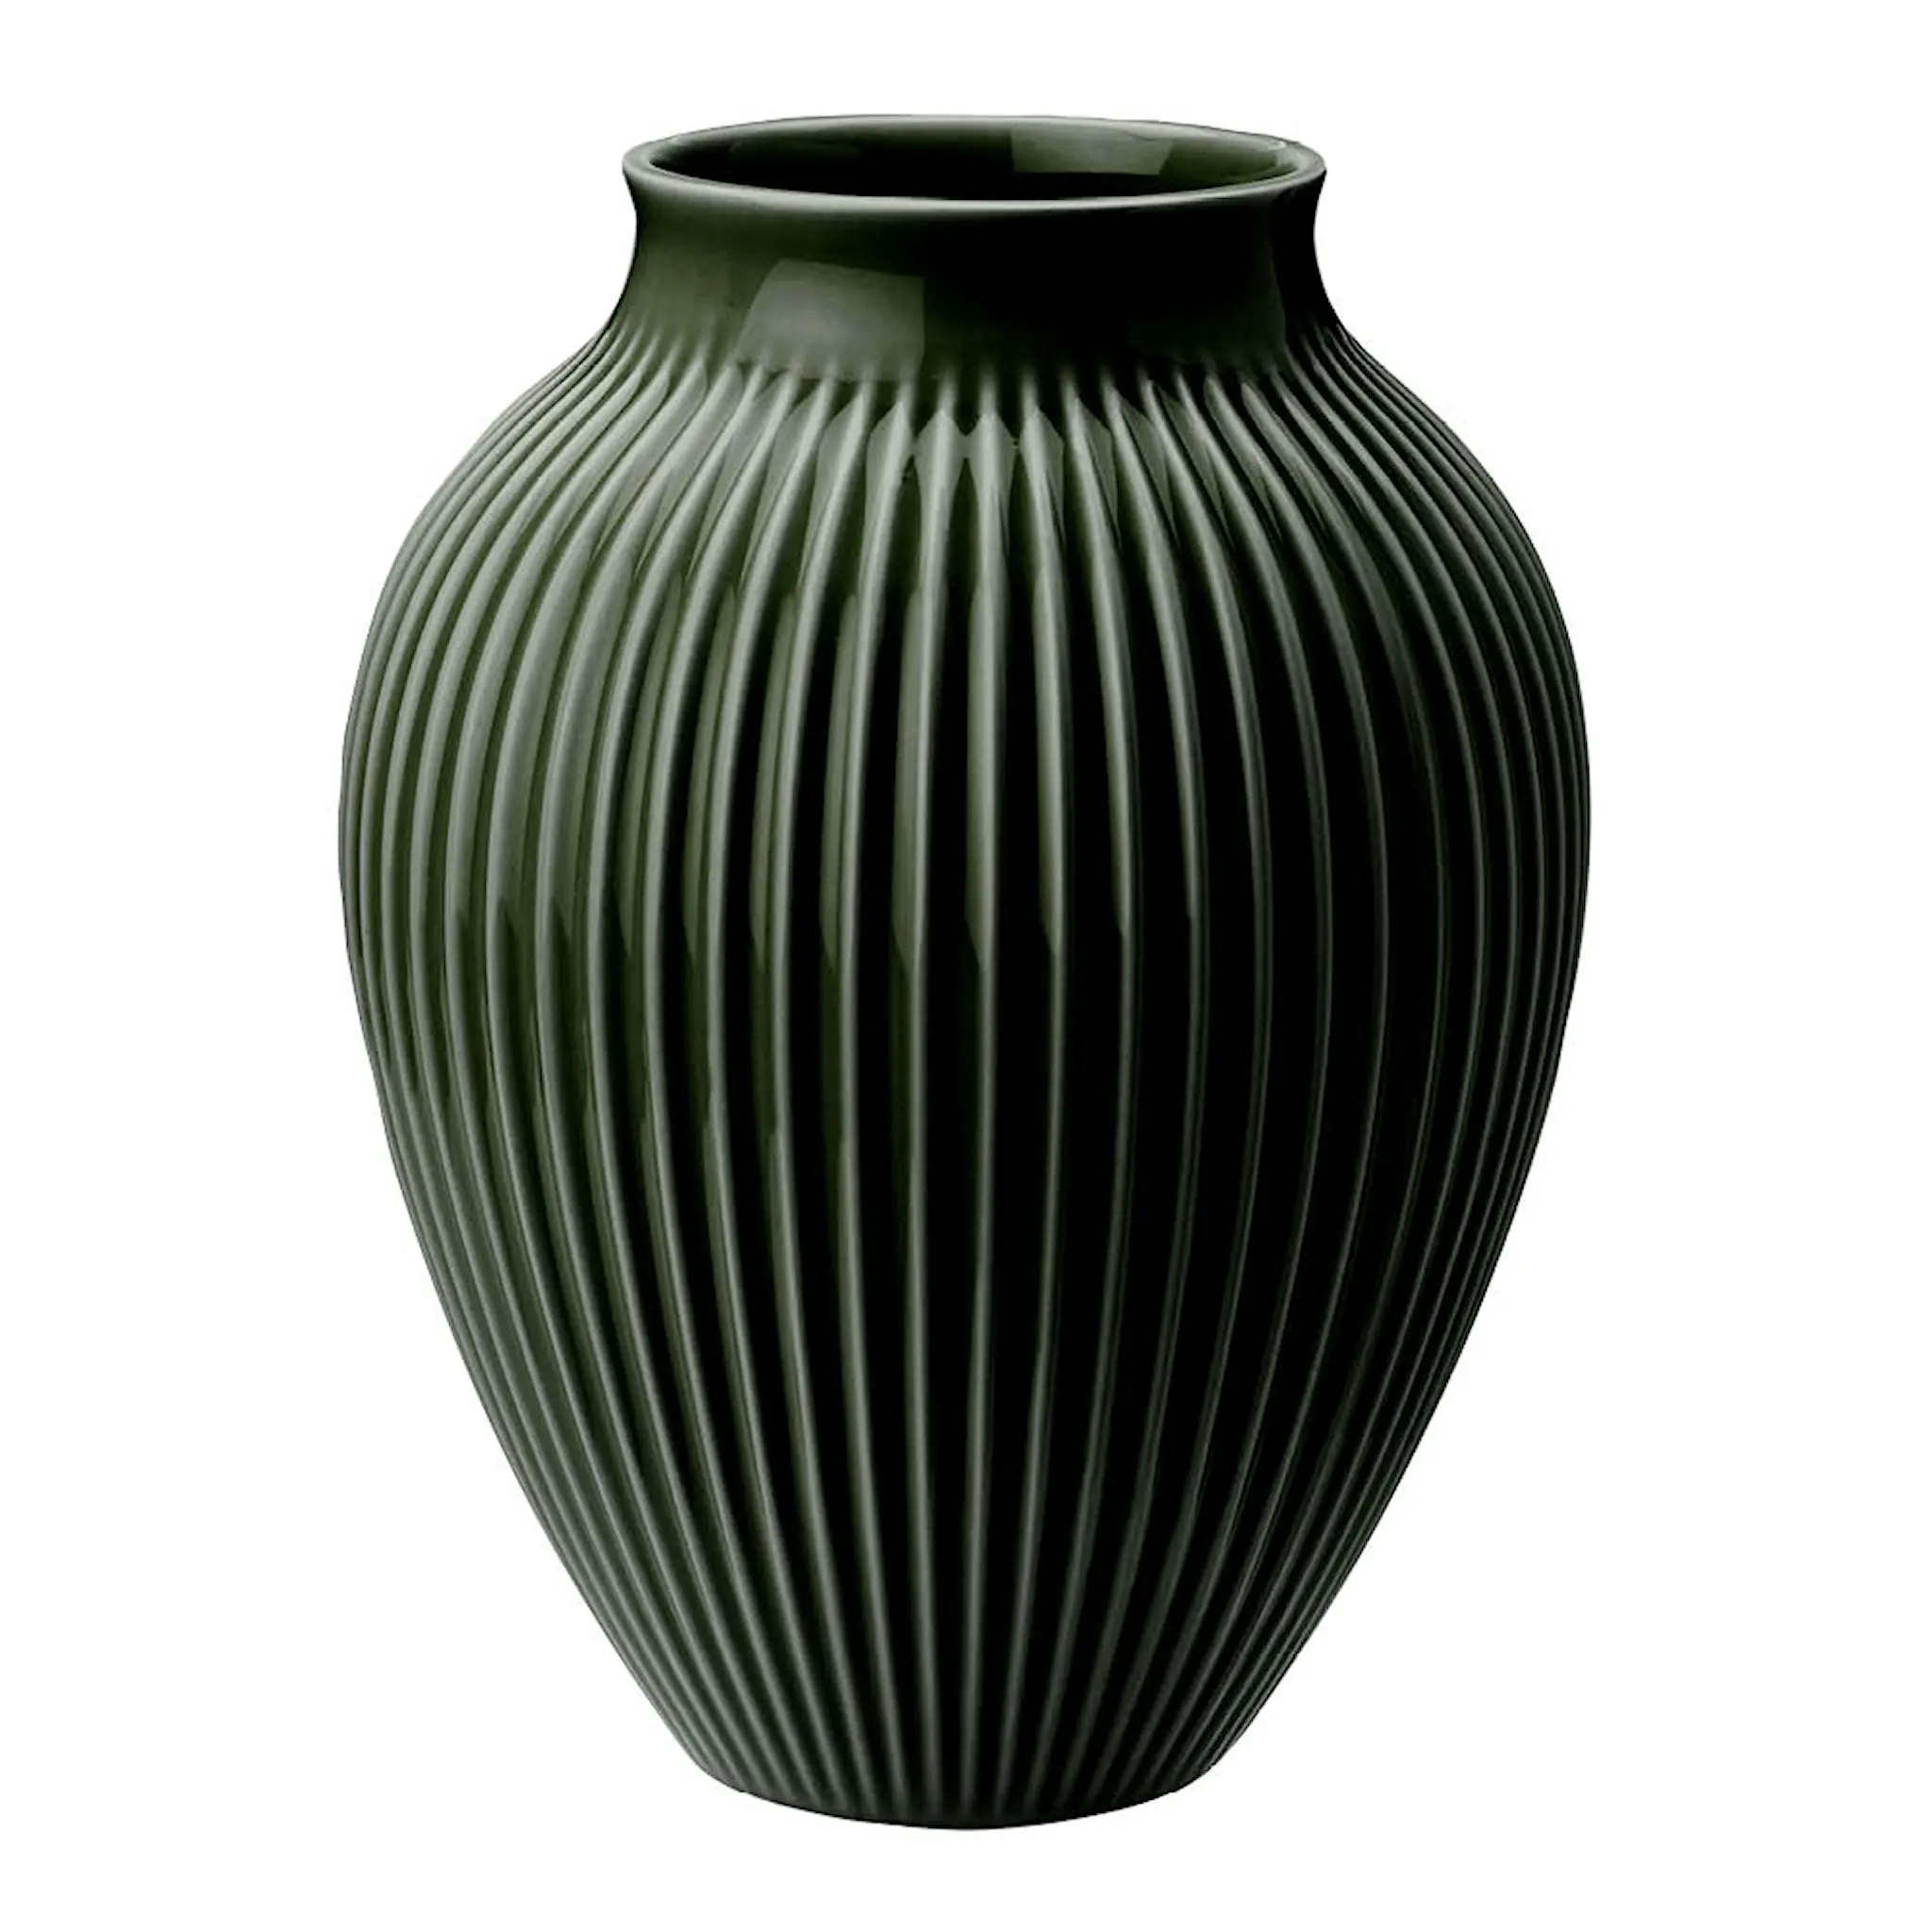 Knabstrup Keramik Ripple vase 27 cm dark green